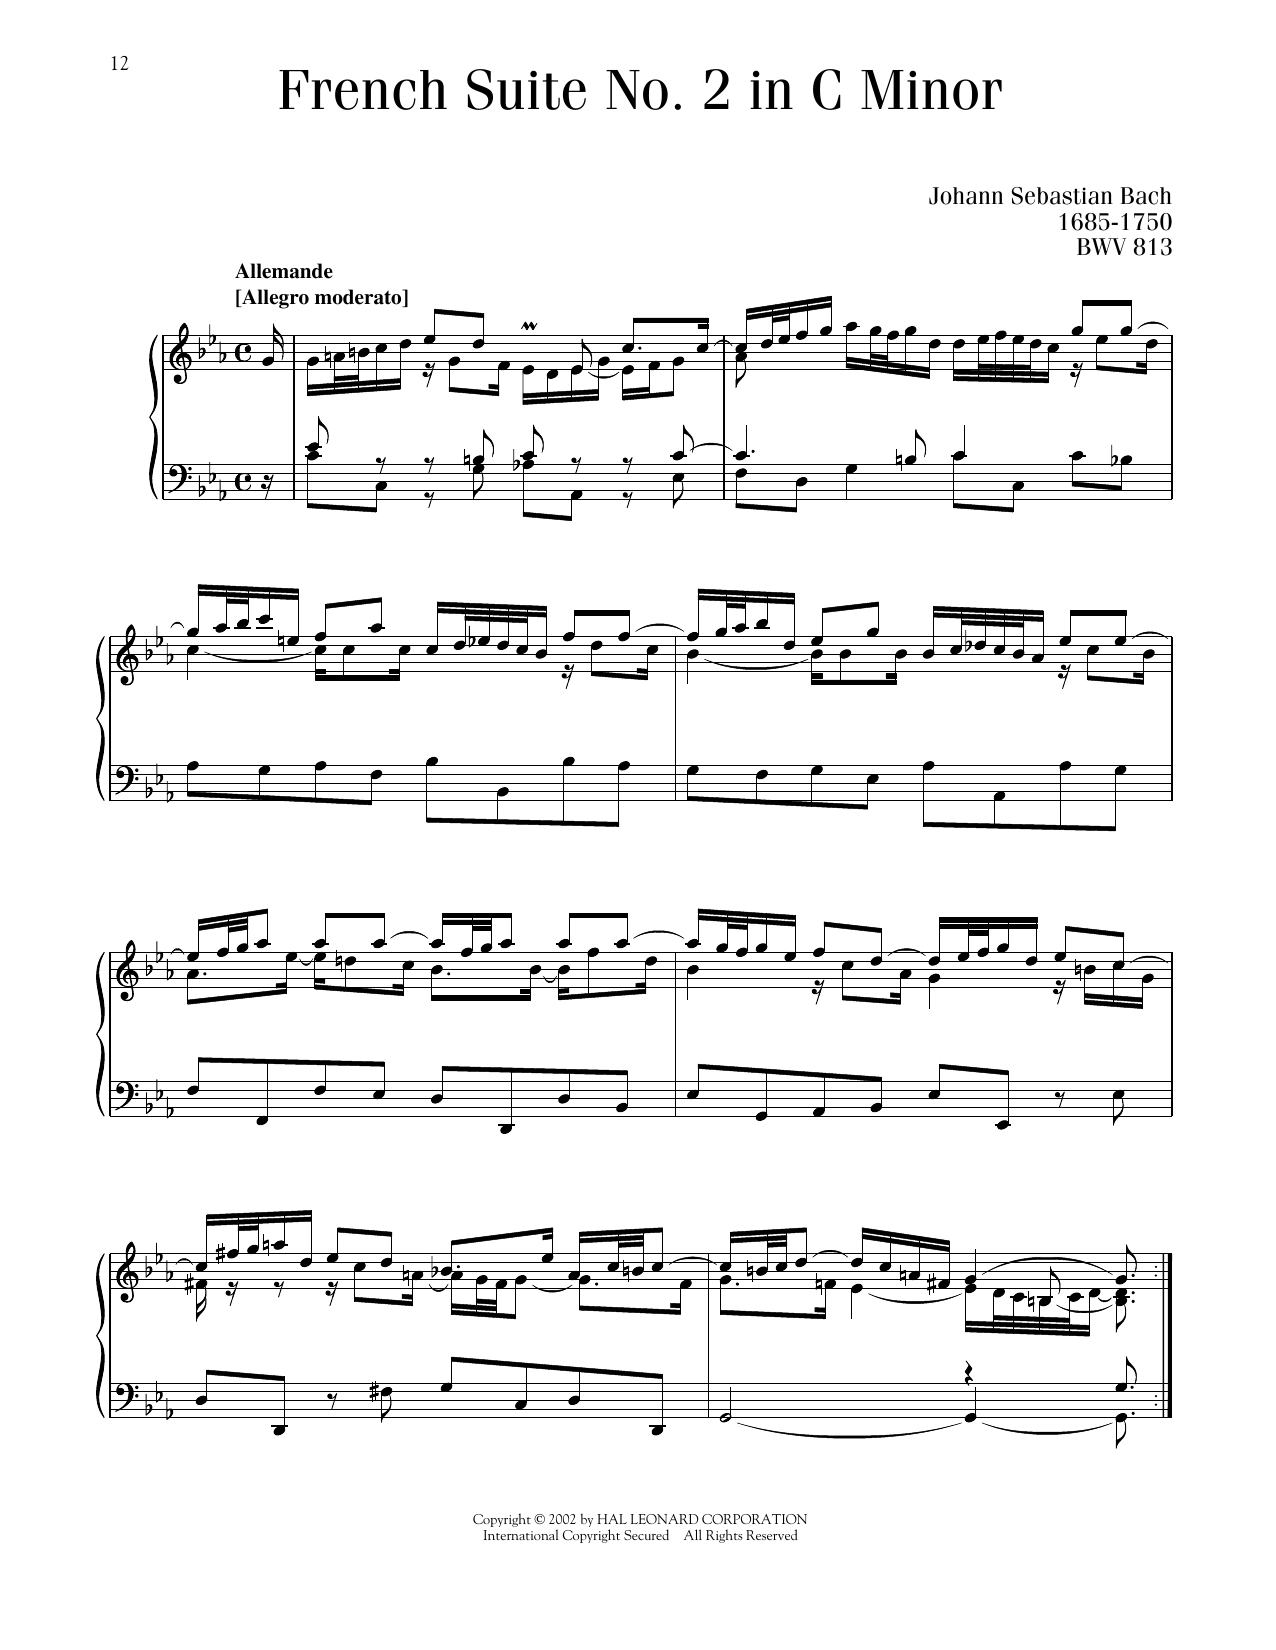 Johann Sebastian Bach French Suite No. 2, BWV 813 sheet music notes printable PDF score